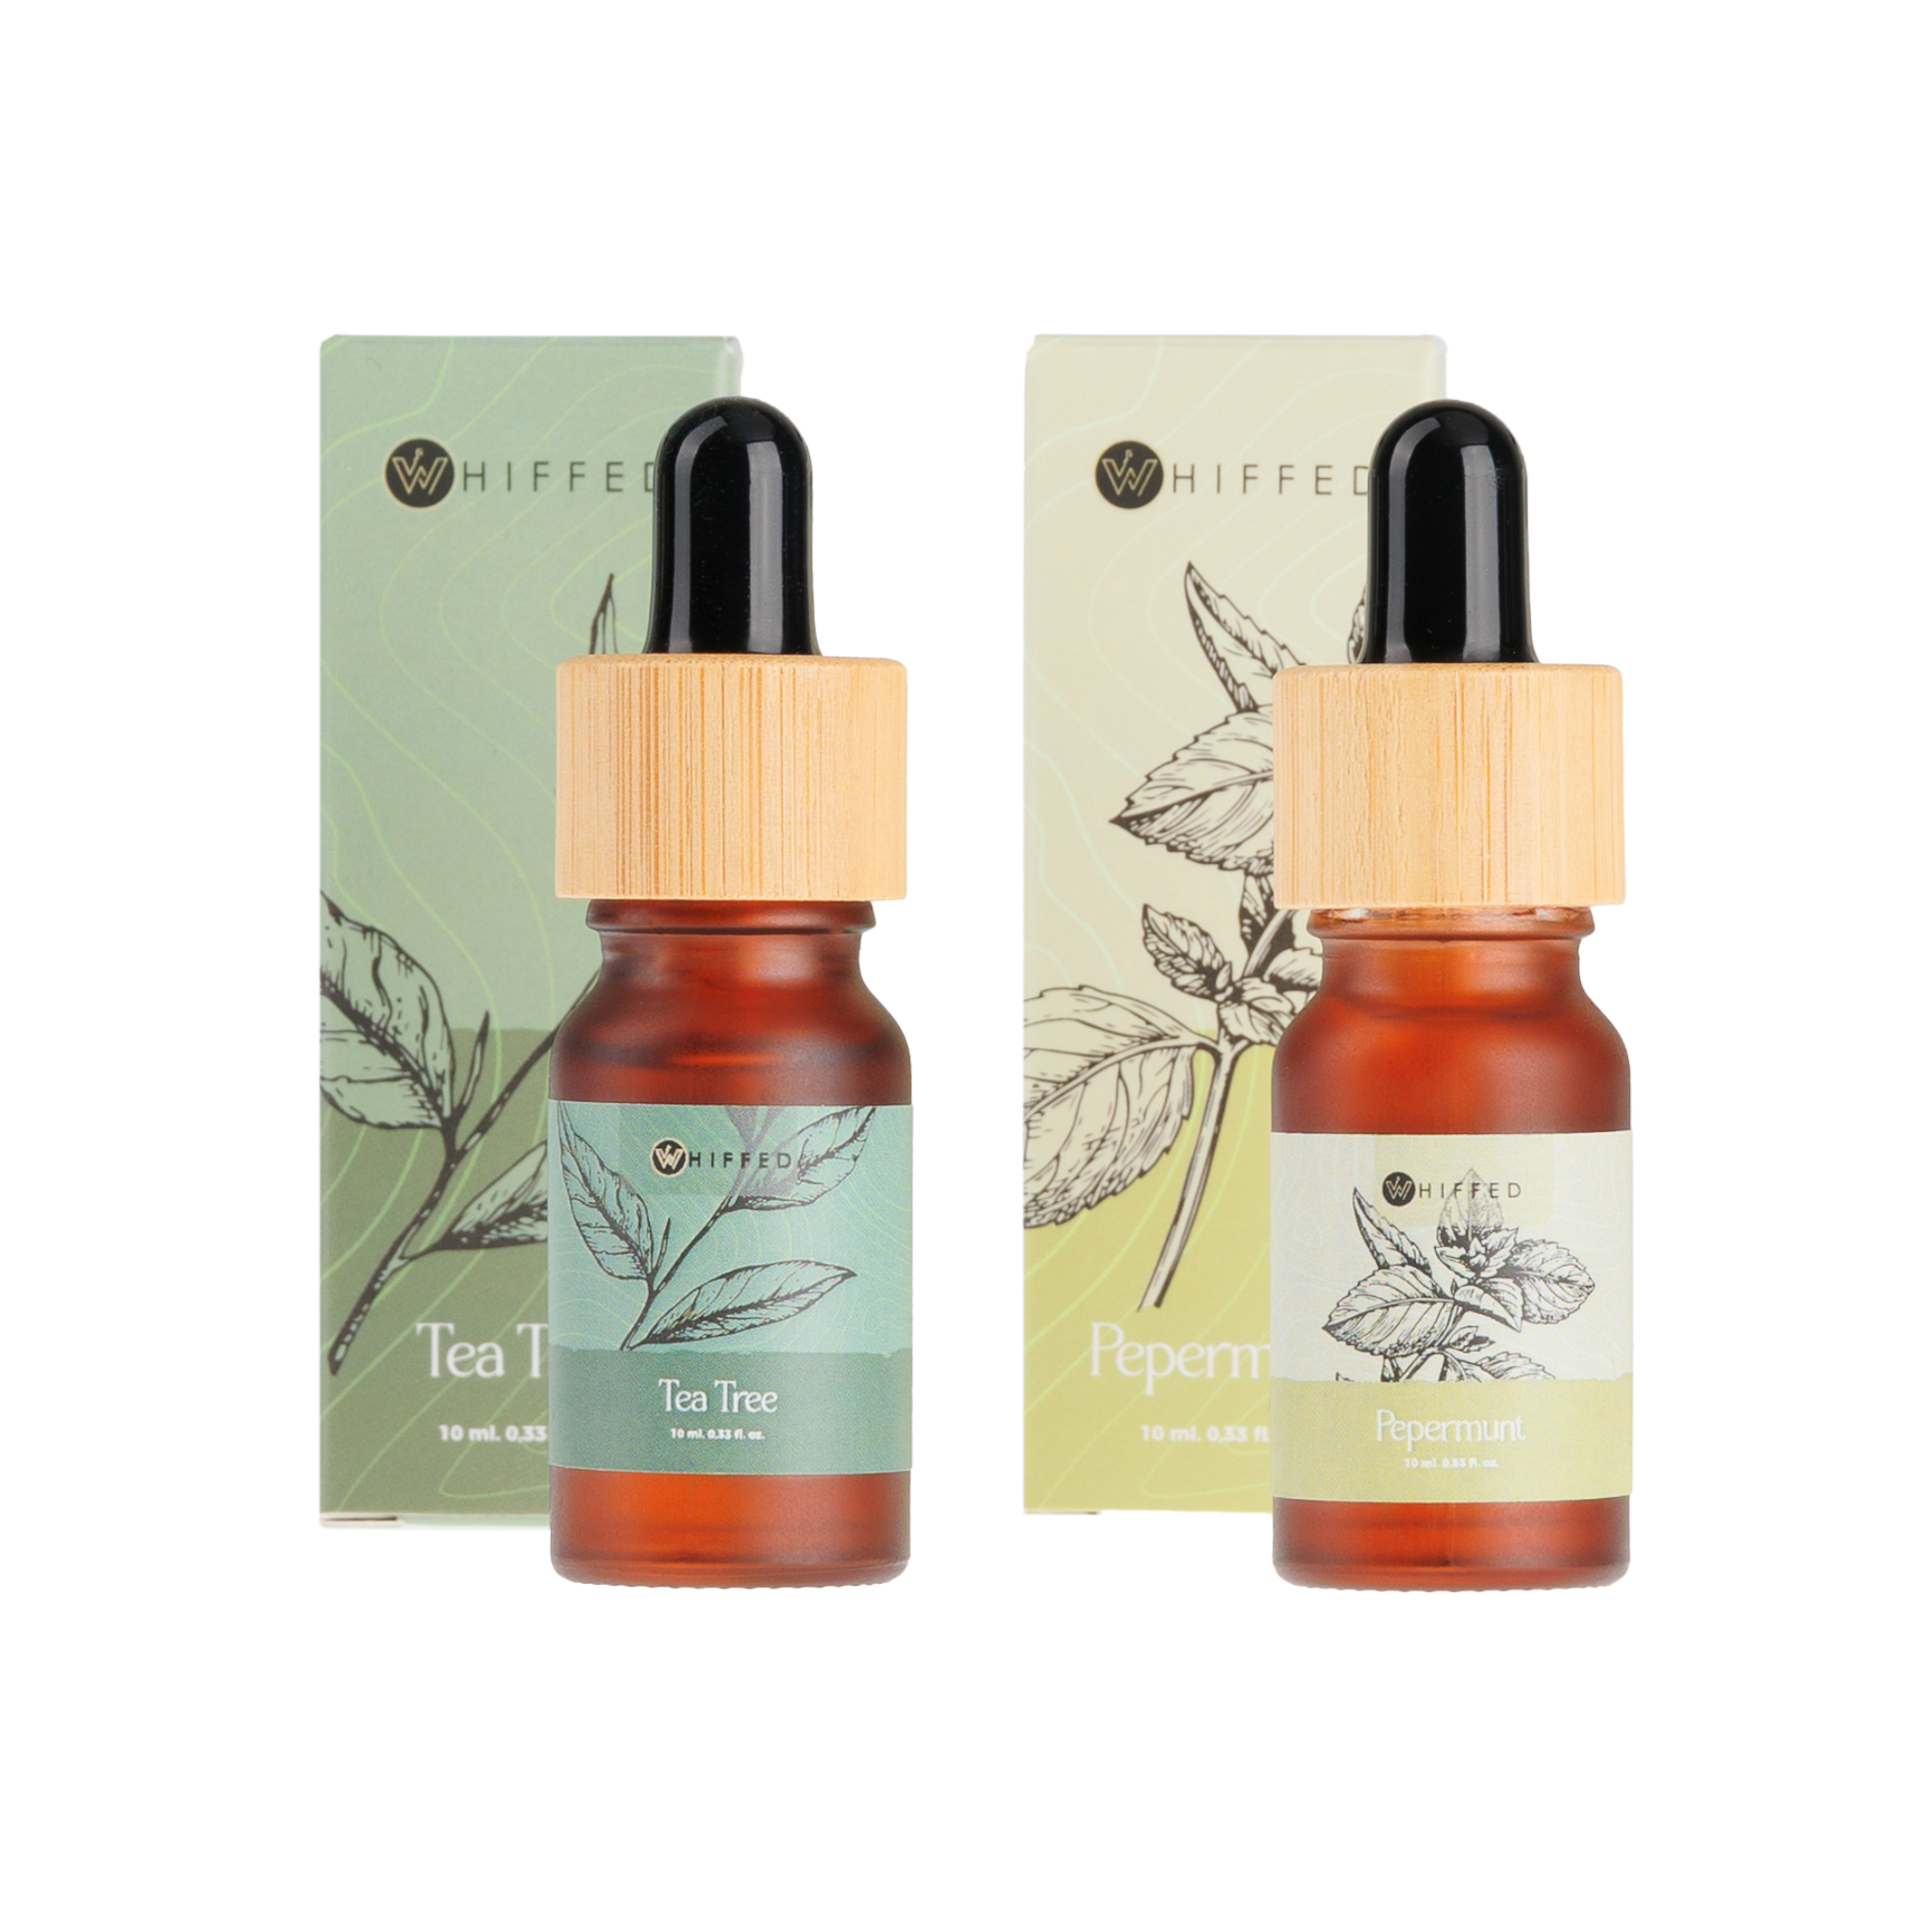 whiffed_show - 10ml duo van tea tree en pepermunt etherische oliën, perfect voor verkoelende huidverzorging en verlichting